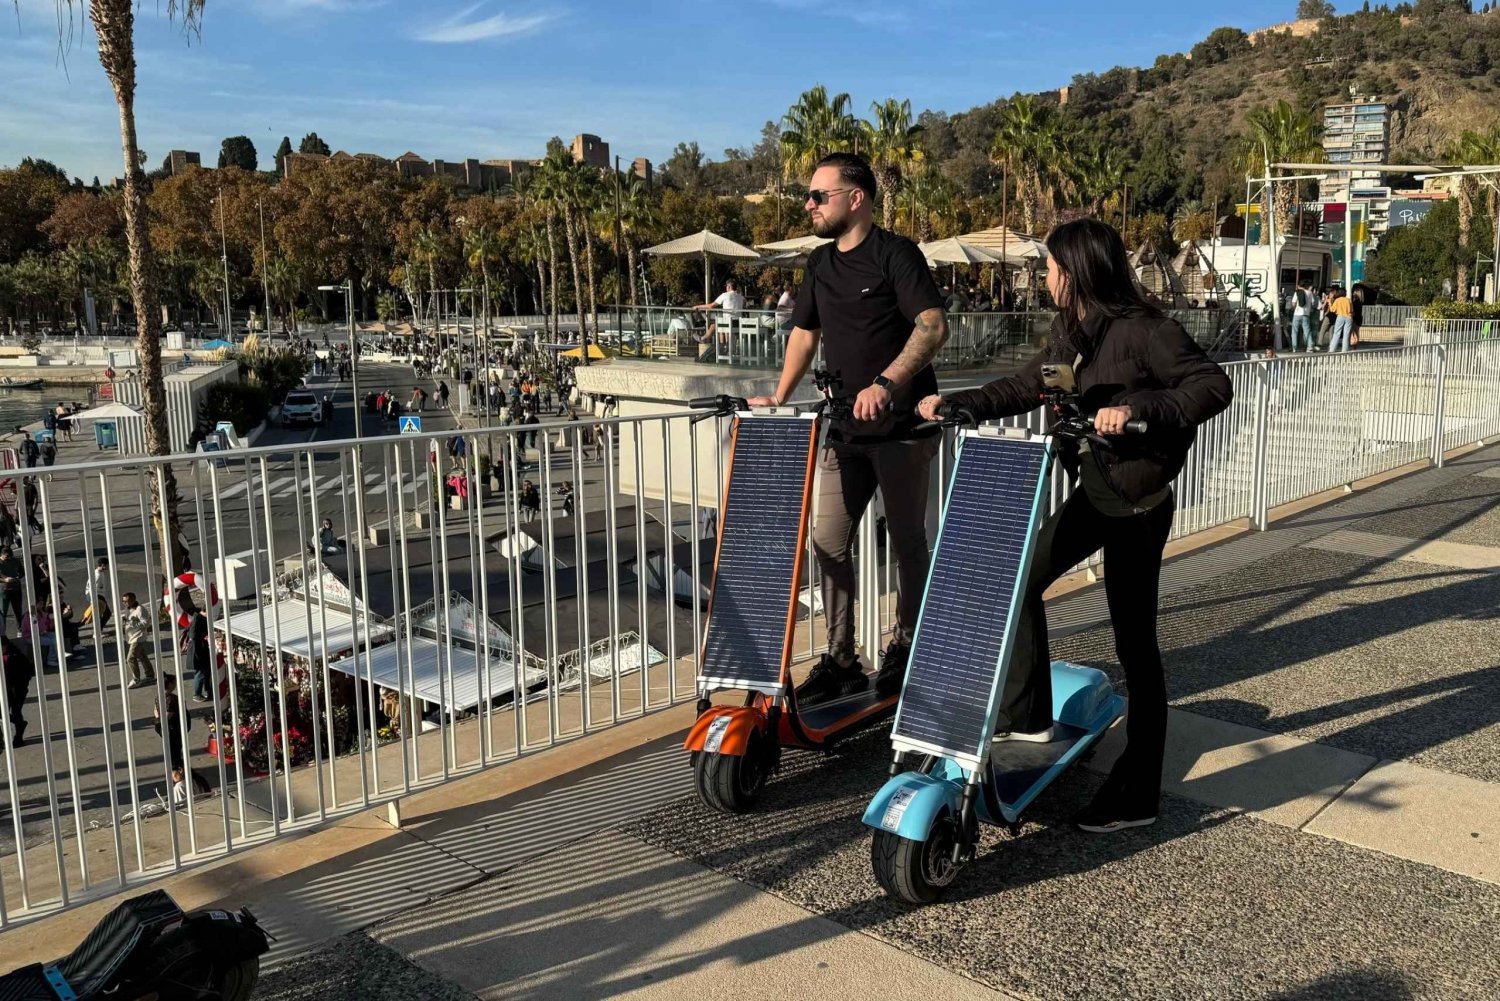 Malaga: Utforsk Malaga på en solcellescooter